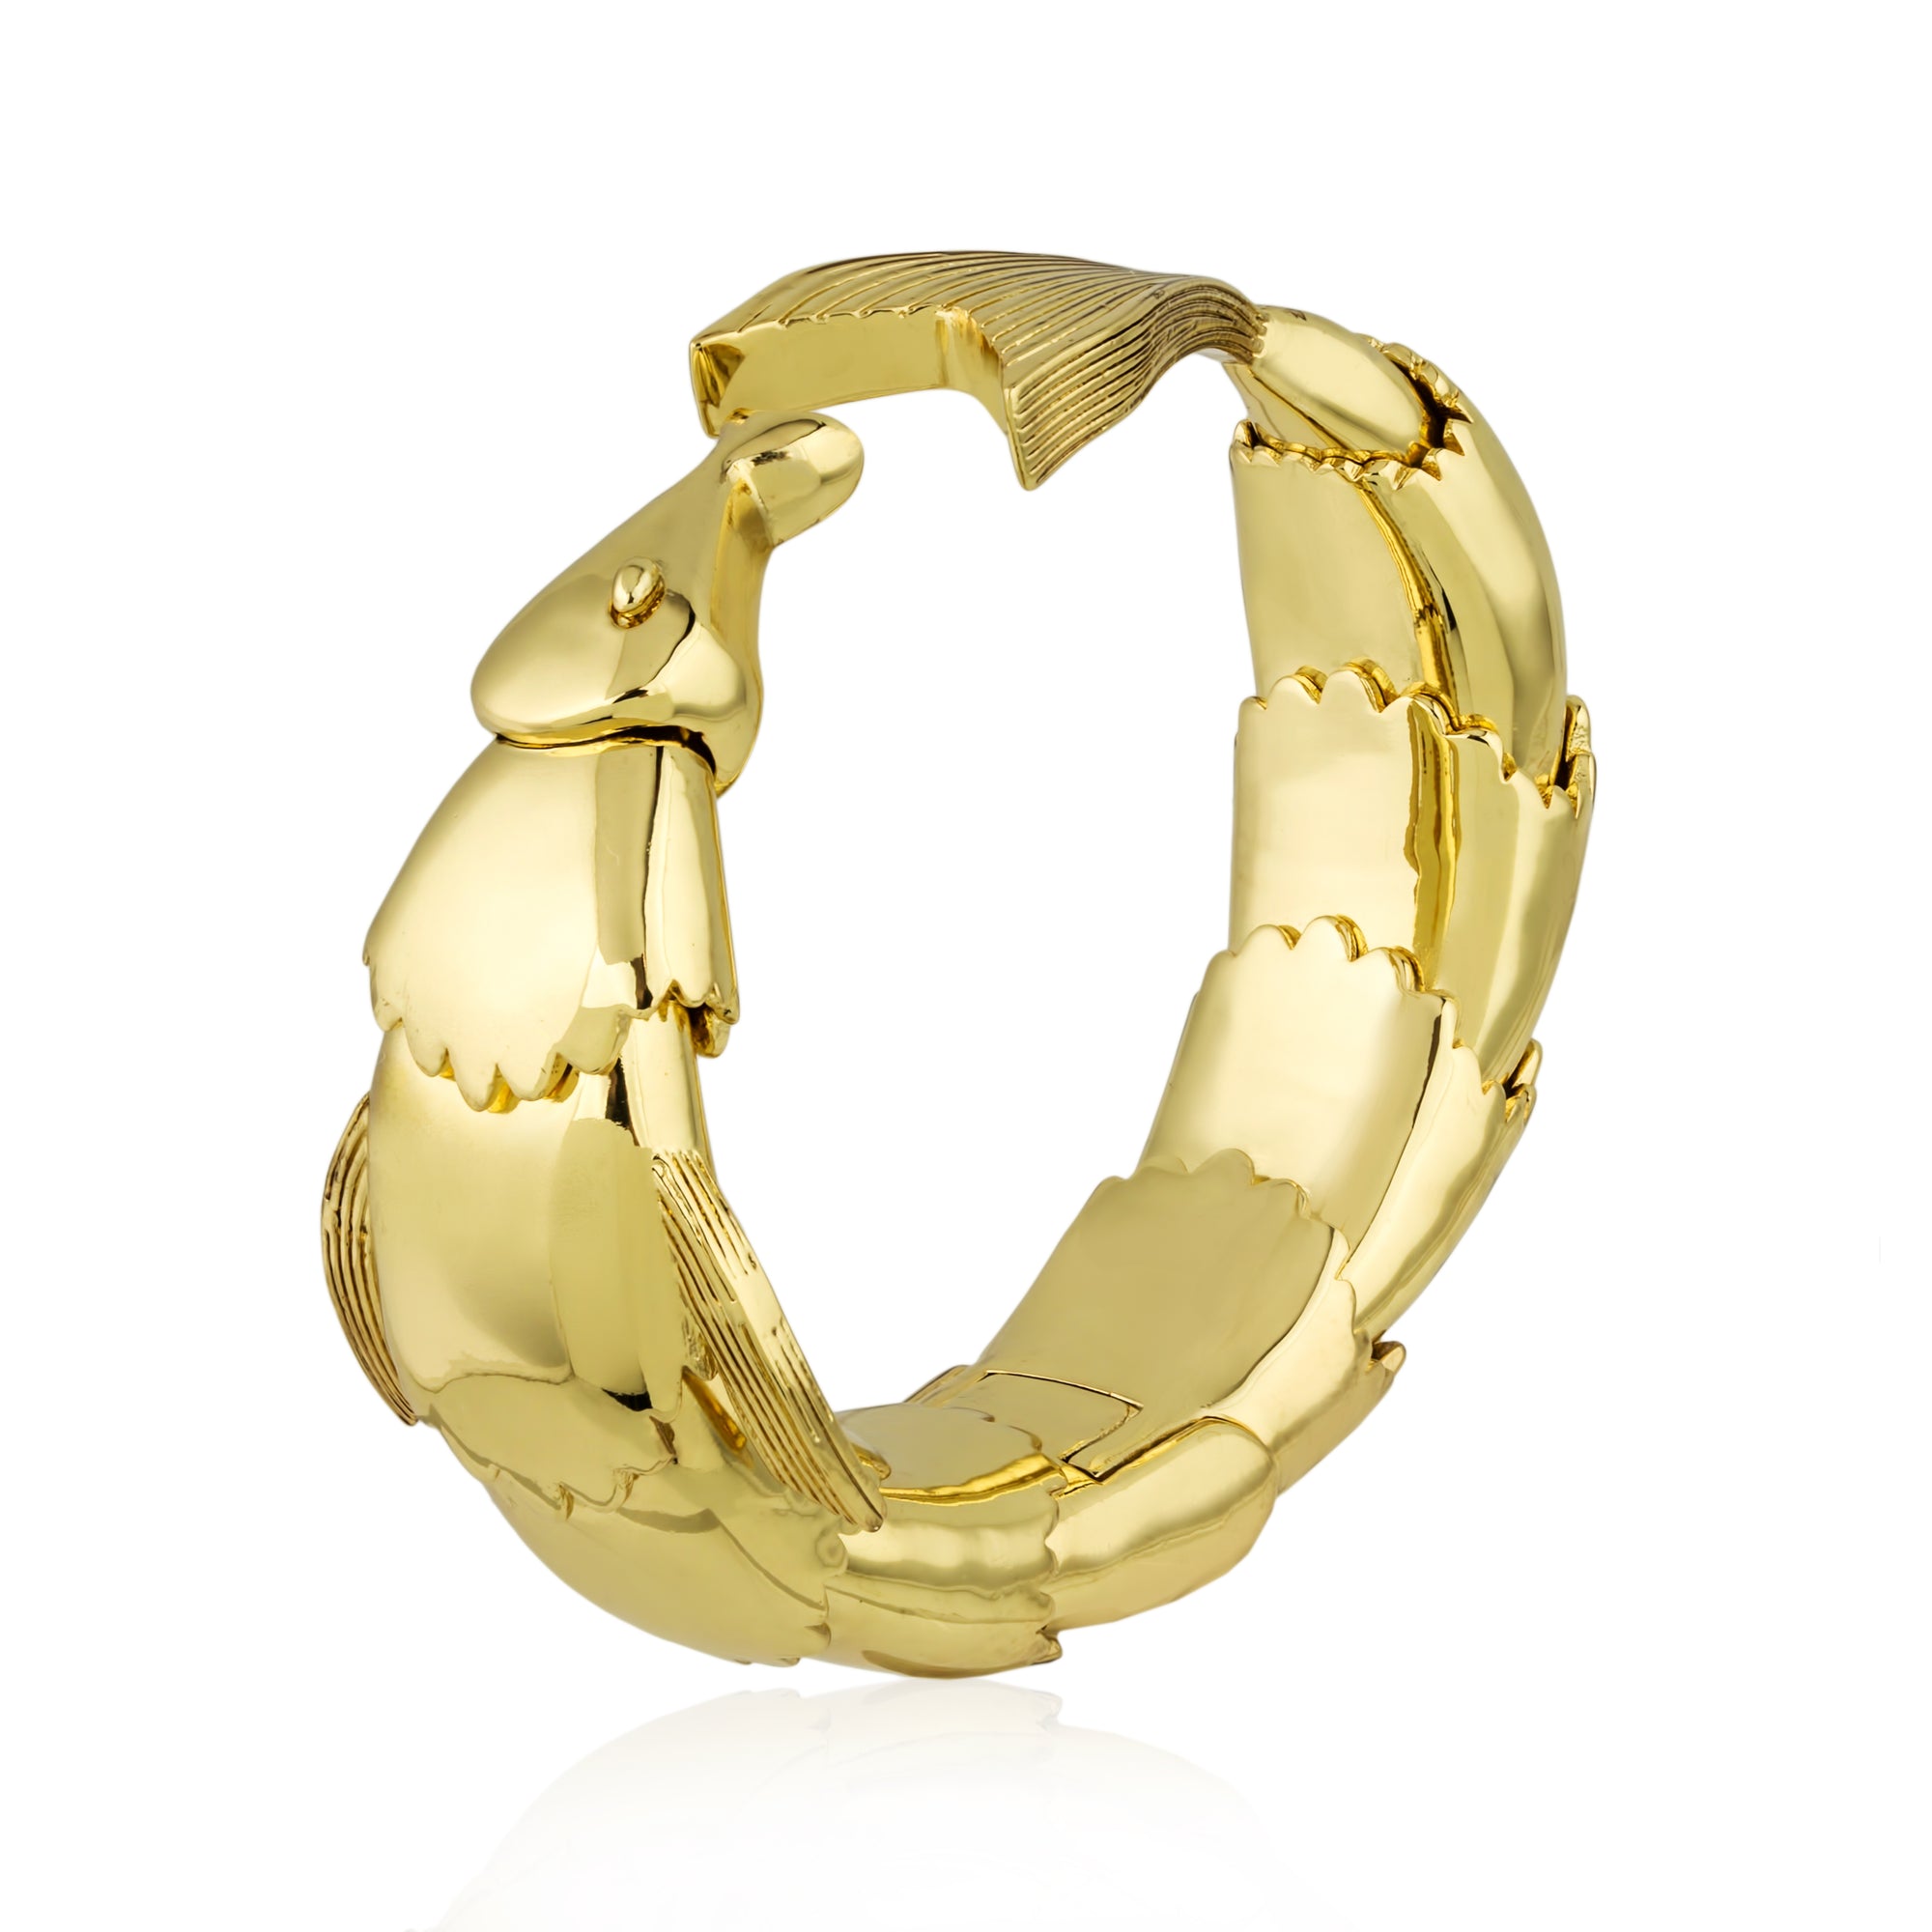 Black n Gold 13 piece Bracelet Set: 6 Gold Filled Bracelets and 7 Delica  Bead Bracelet Set in Jet Black - Fuession Jewelry